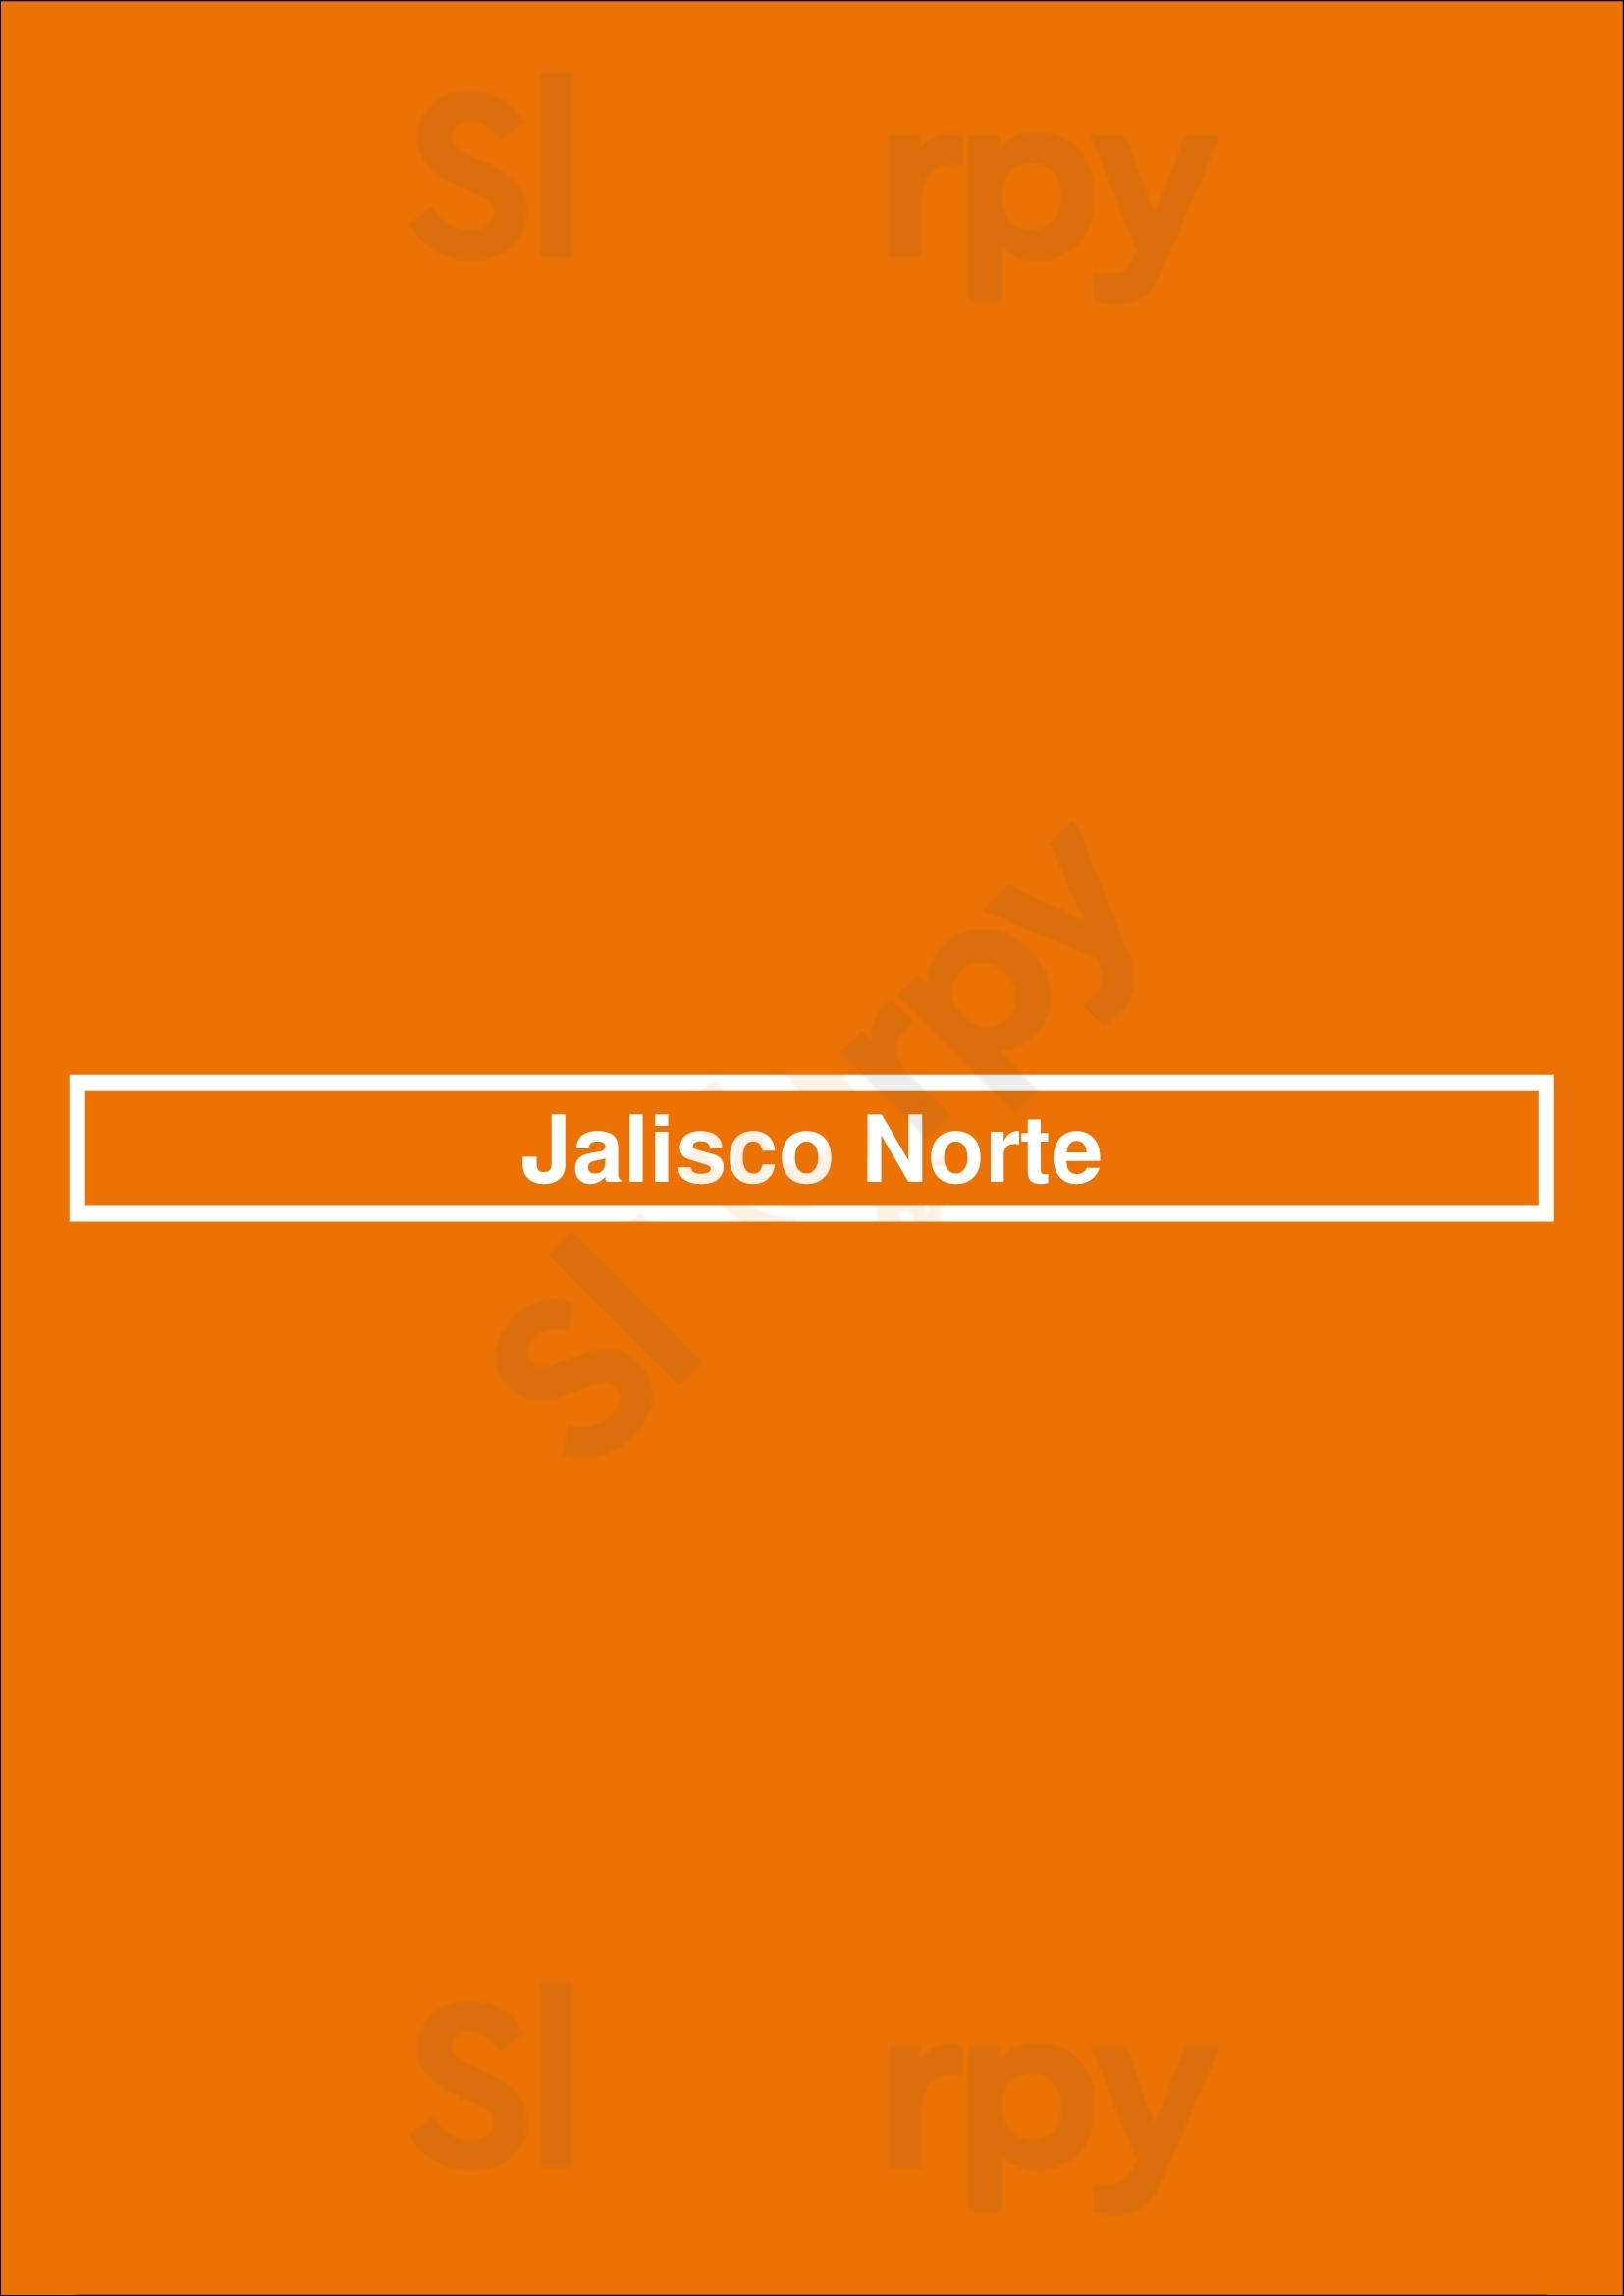 Jalisco Norte Dallas Menu - 1